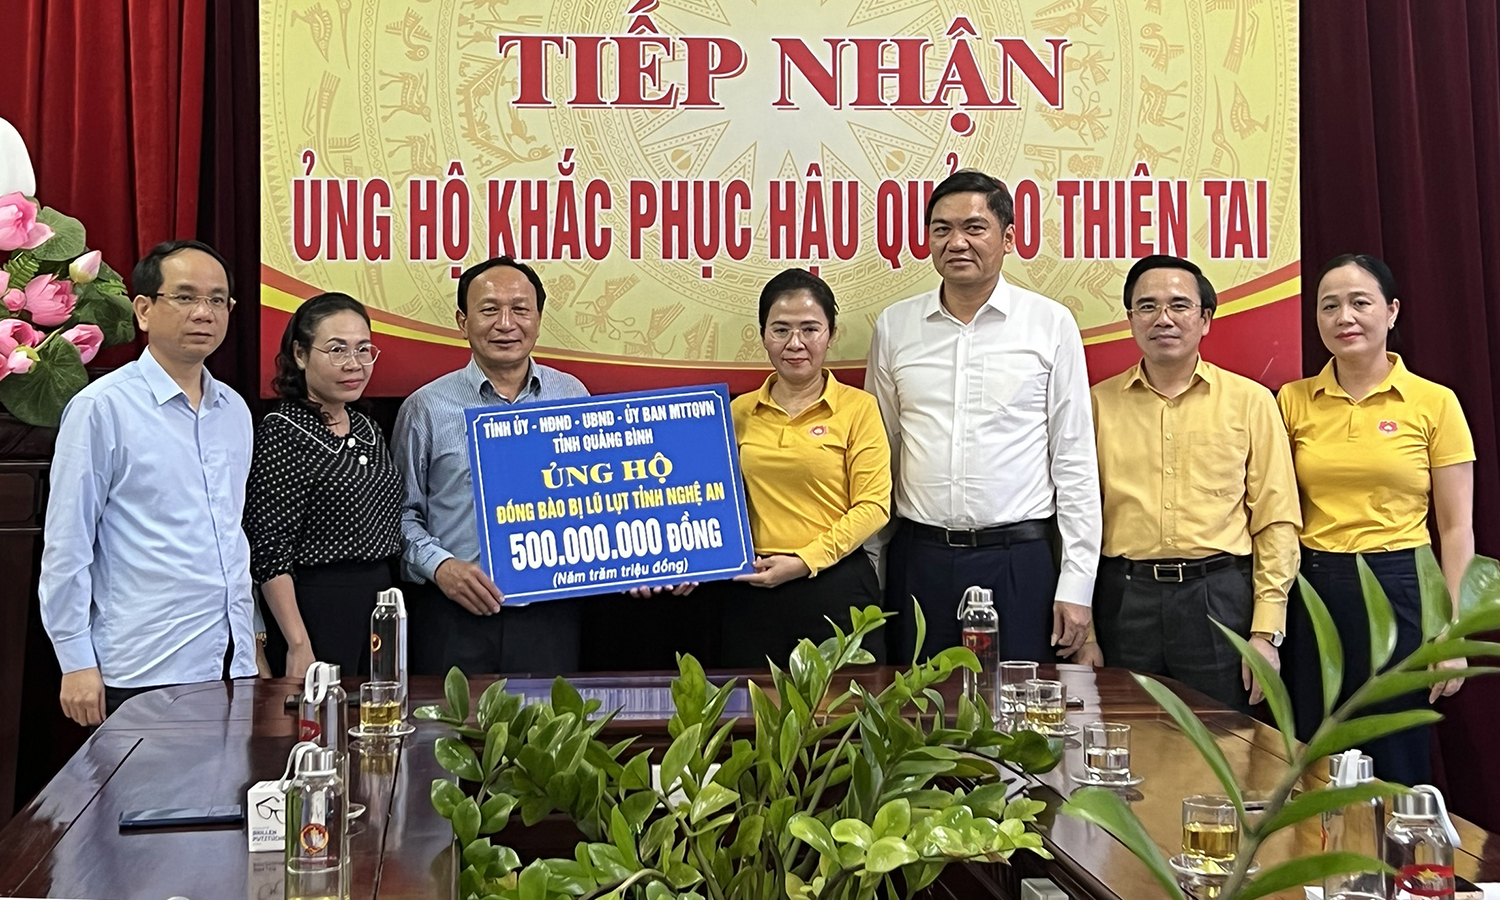 Quảng Bình hỗ trợ 2 tỉnh Nghệ An, Hà Tĩnh khắc phục hậu quả thiên tai